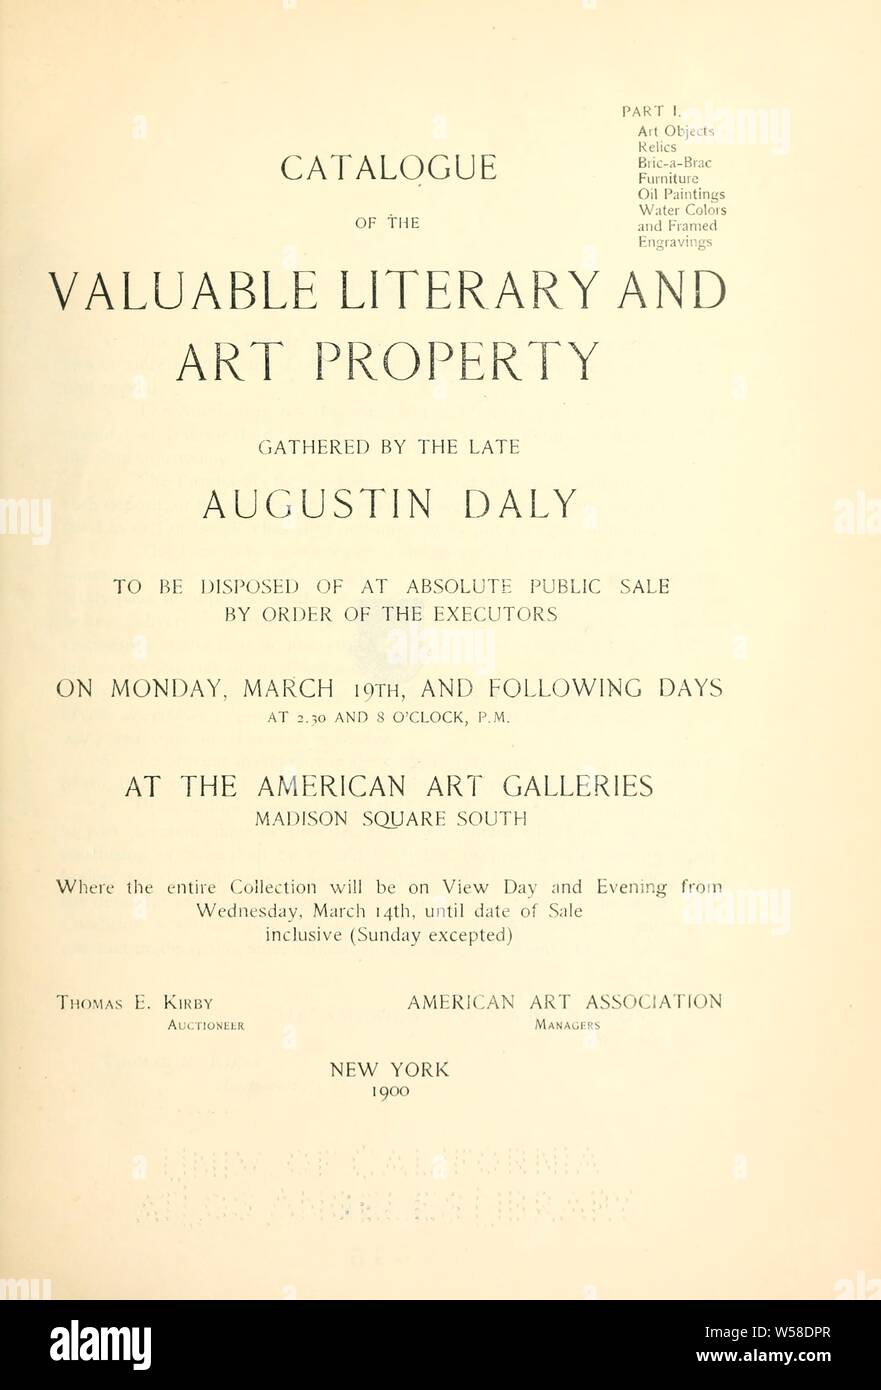 Catálogo de la valiosa propiedad literaria y artística reunida por la tarde Augustin Daly, al eliminarse en venta pública absoluta .. : Daly, Augustin, 1838-1899 Foto de stock